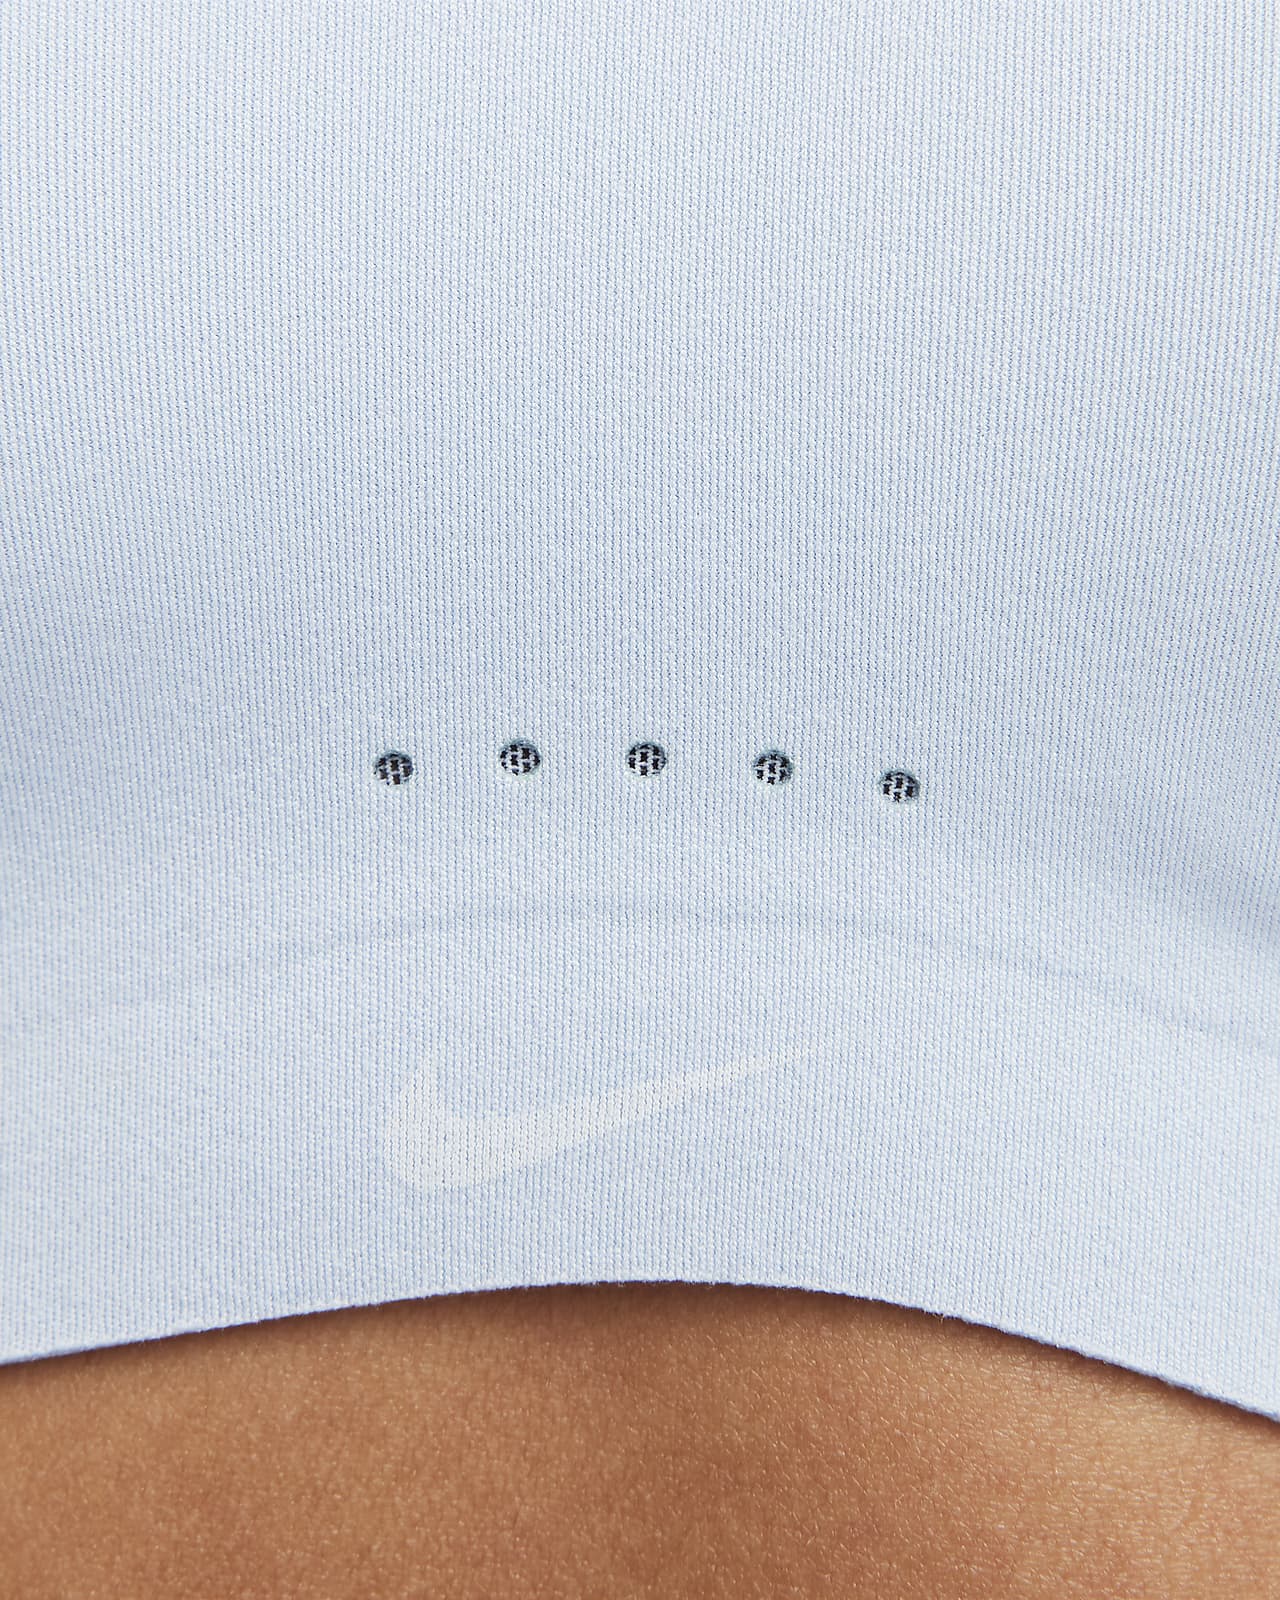 Nike Dri-FIT Alate Women's Minimalist Light-Support Padded Sports Bra